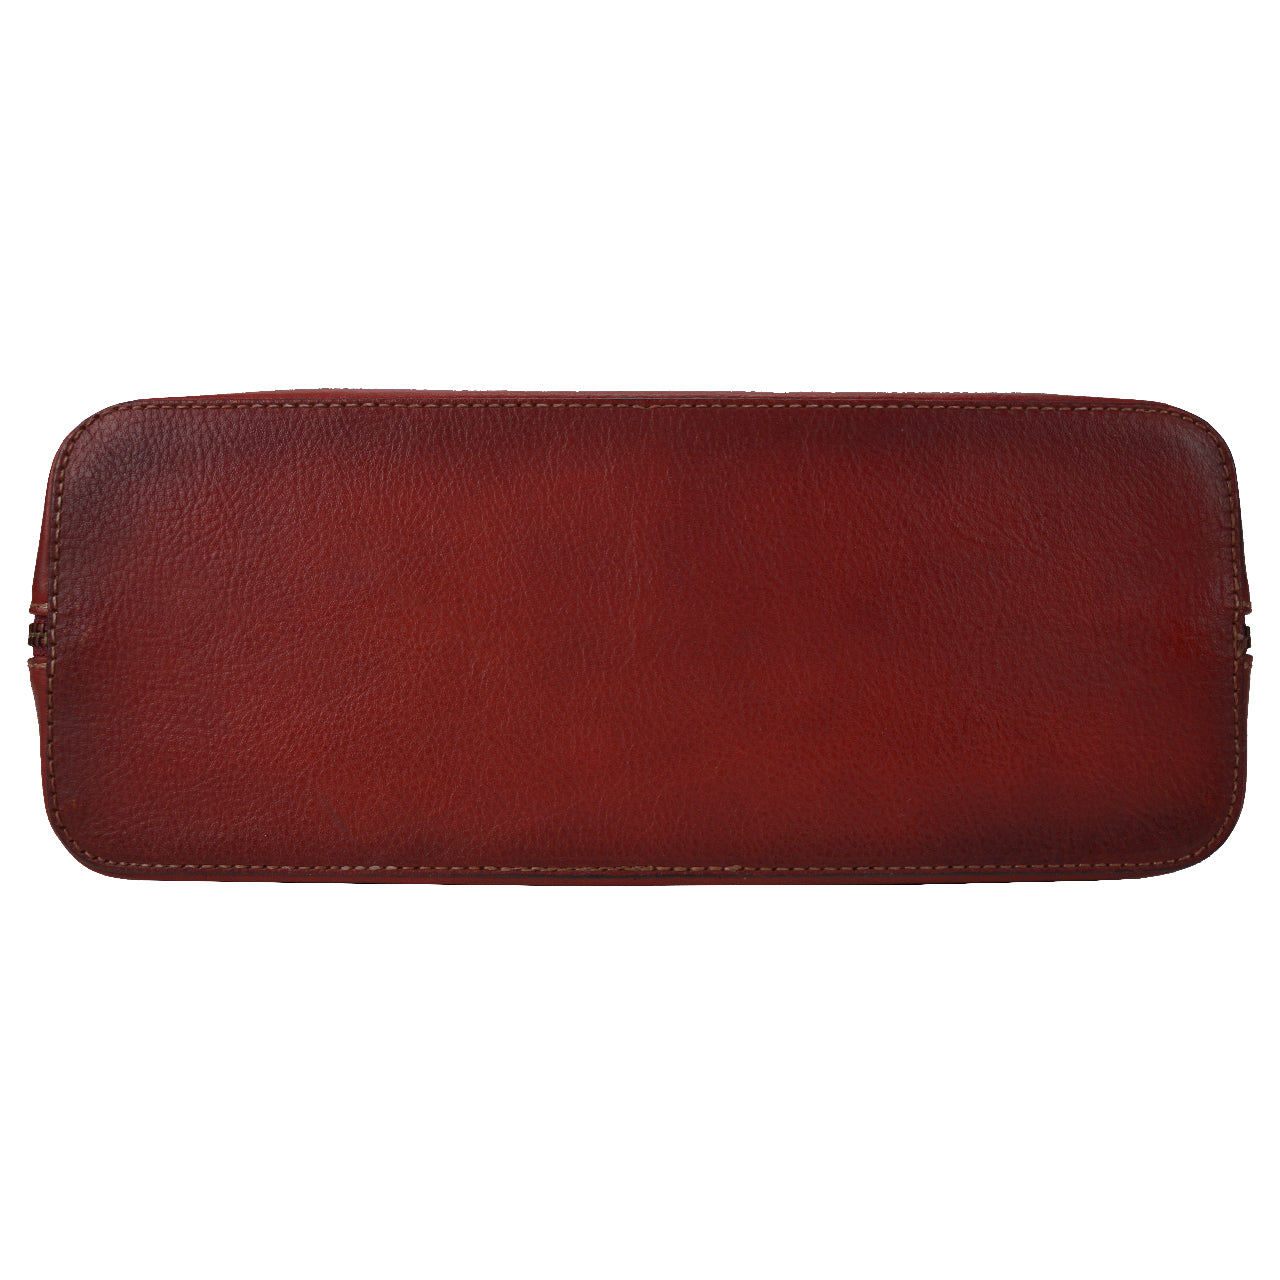 Pratesi Panzano B258 Bag in genuine Italian leather